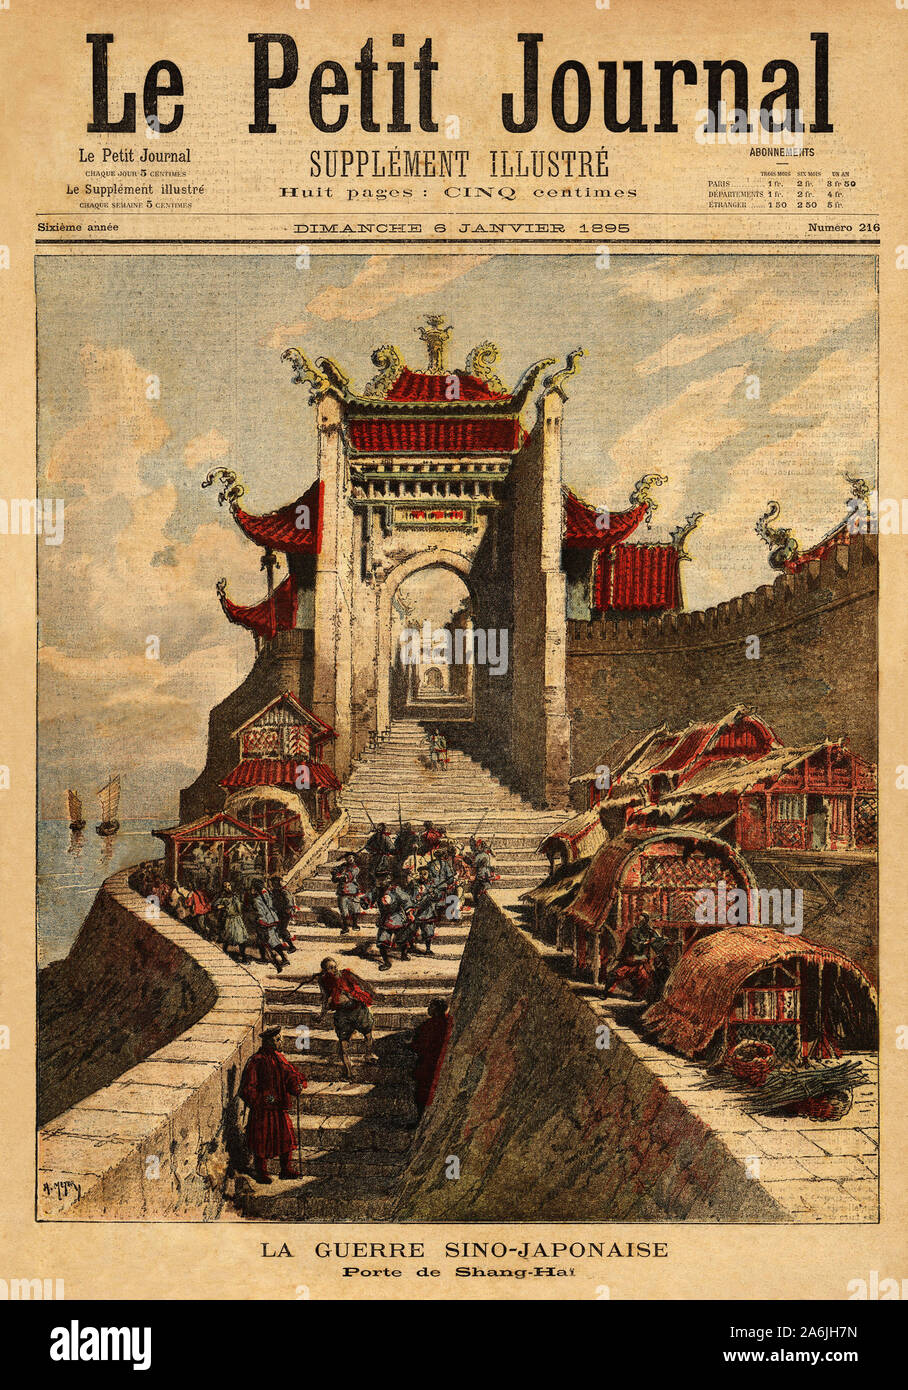 First Sino-Japanese War - La porte de Shanghai, haut lieu de victoire japonaise pendant la premiere guerre sino japonaise ( aout 1894 a avril 1895) . Stock Photo